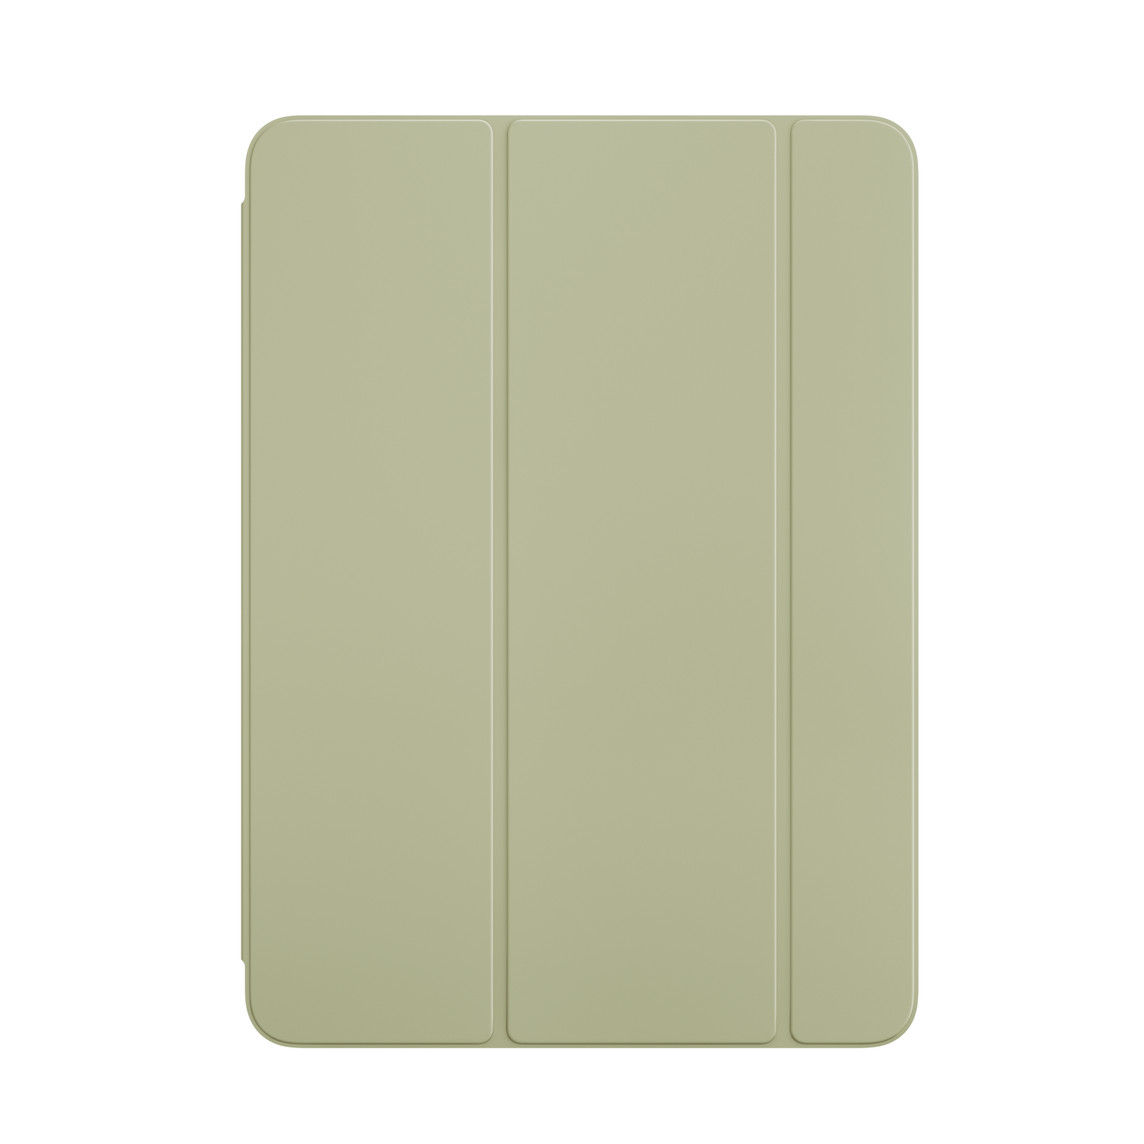 Framsidan av grön Smart Folio till iPad Air.